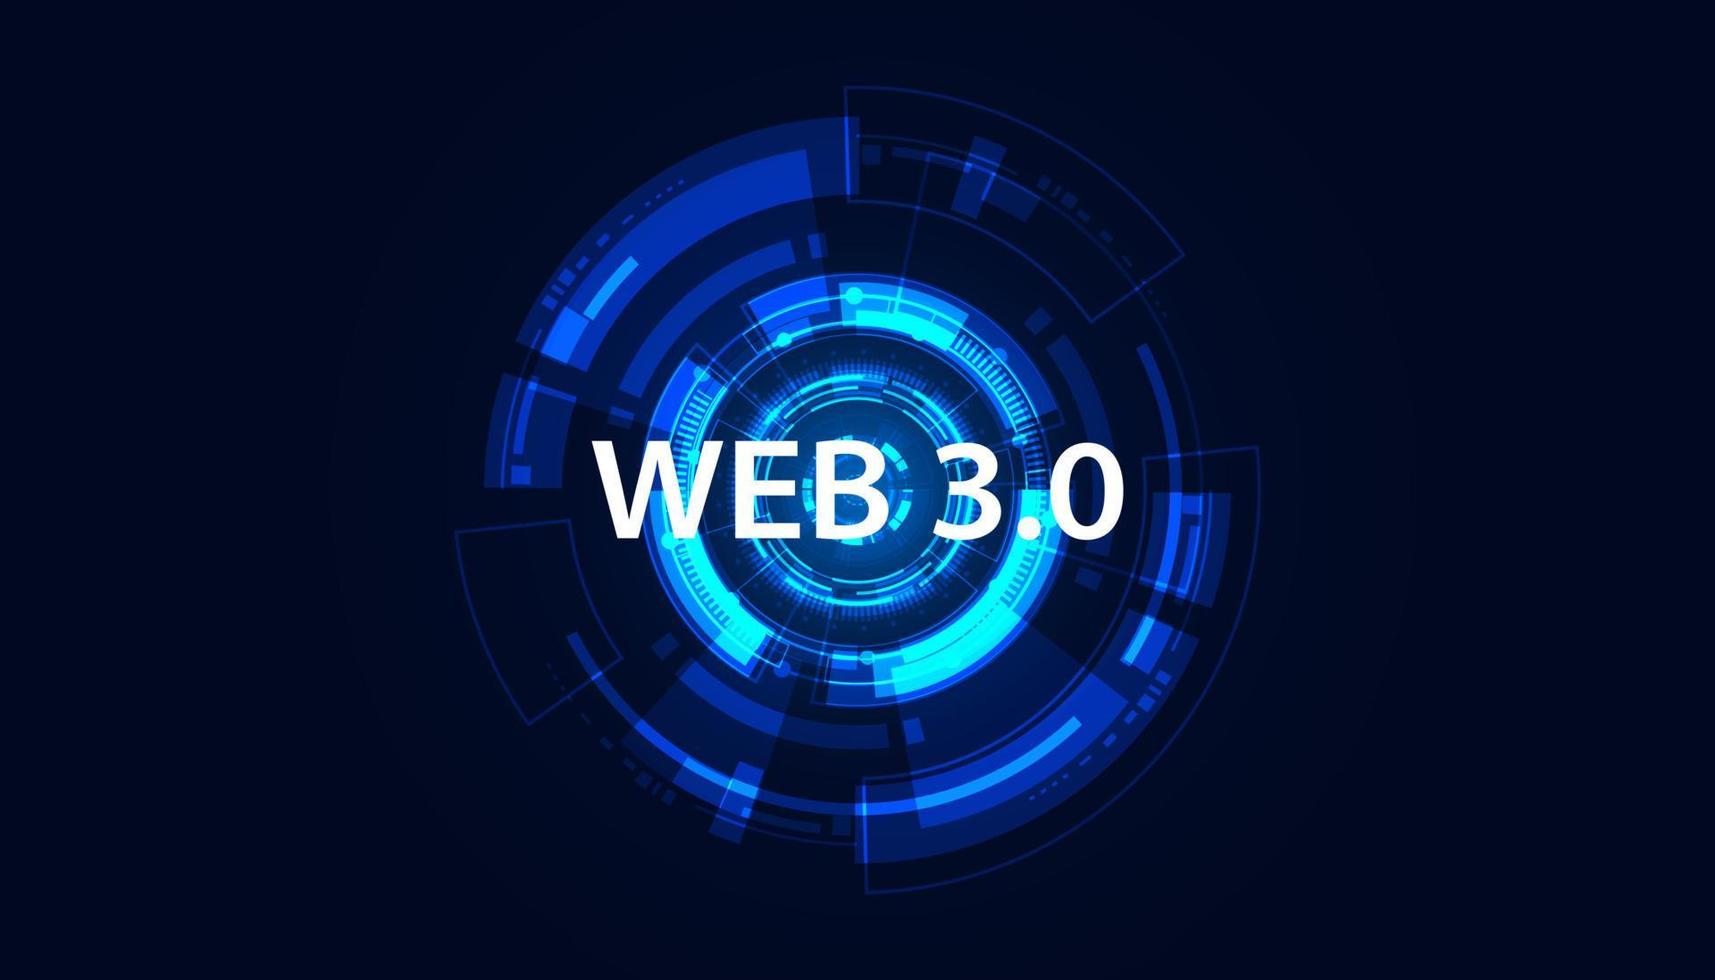 abstrakt teknologi cirkel digital trogen begrepp webb 3.0 semantisk webb och artificiell intelligens åtkomst nätverk tjänster personlig information arbetssätt på en nätverk decentraliserad och blockchain vektor